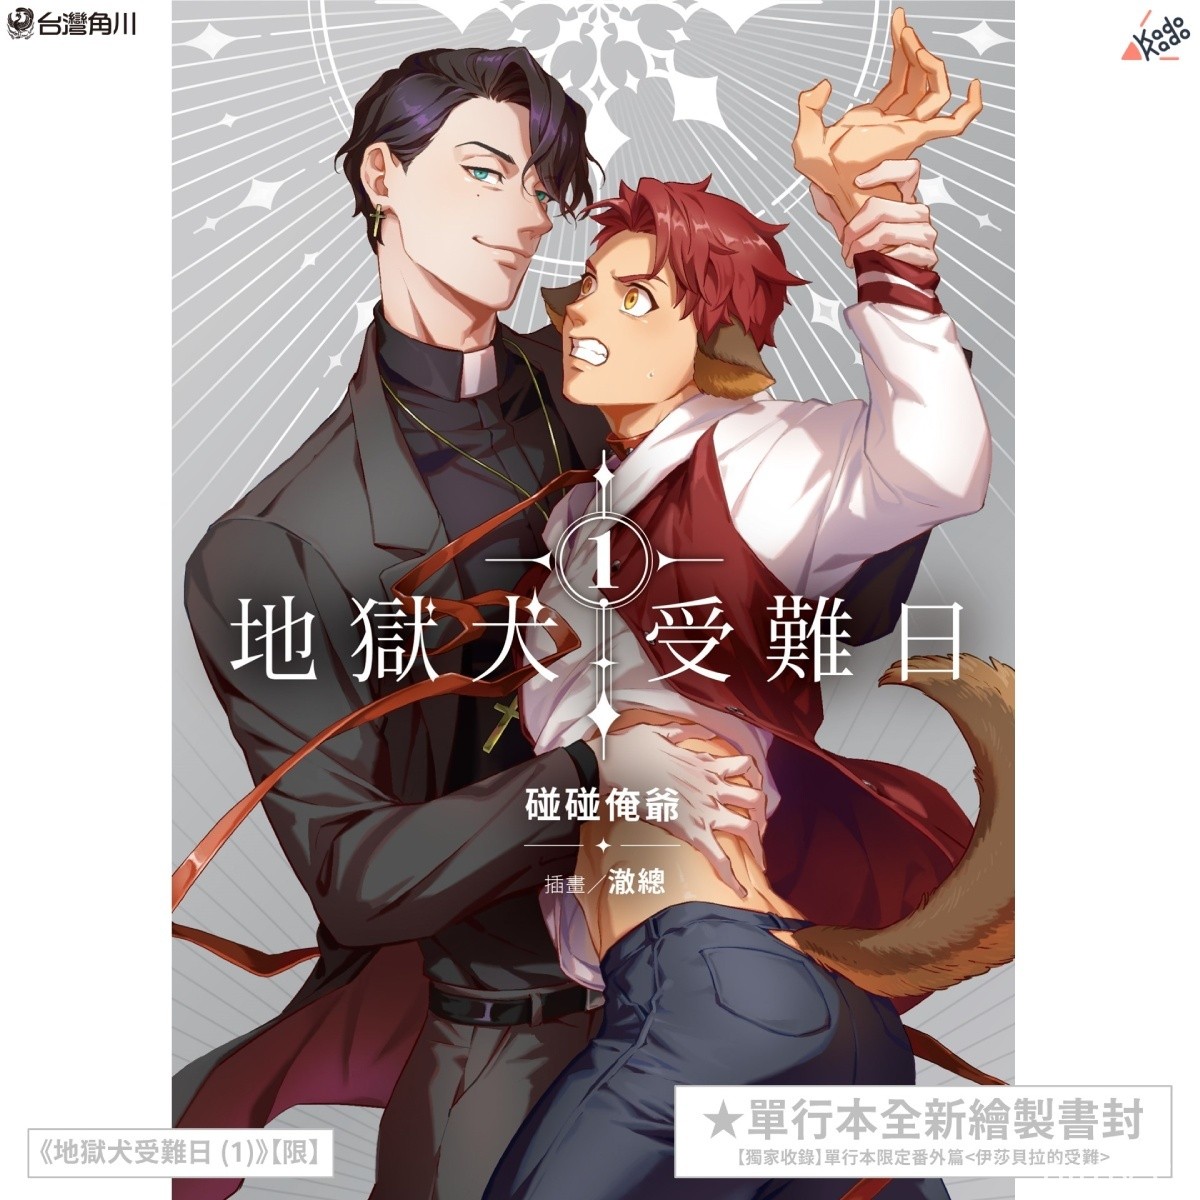 【漫博 22】台灣角川公開 BL 小說《地獄犬受難日》簽名會參加辦法